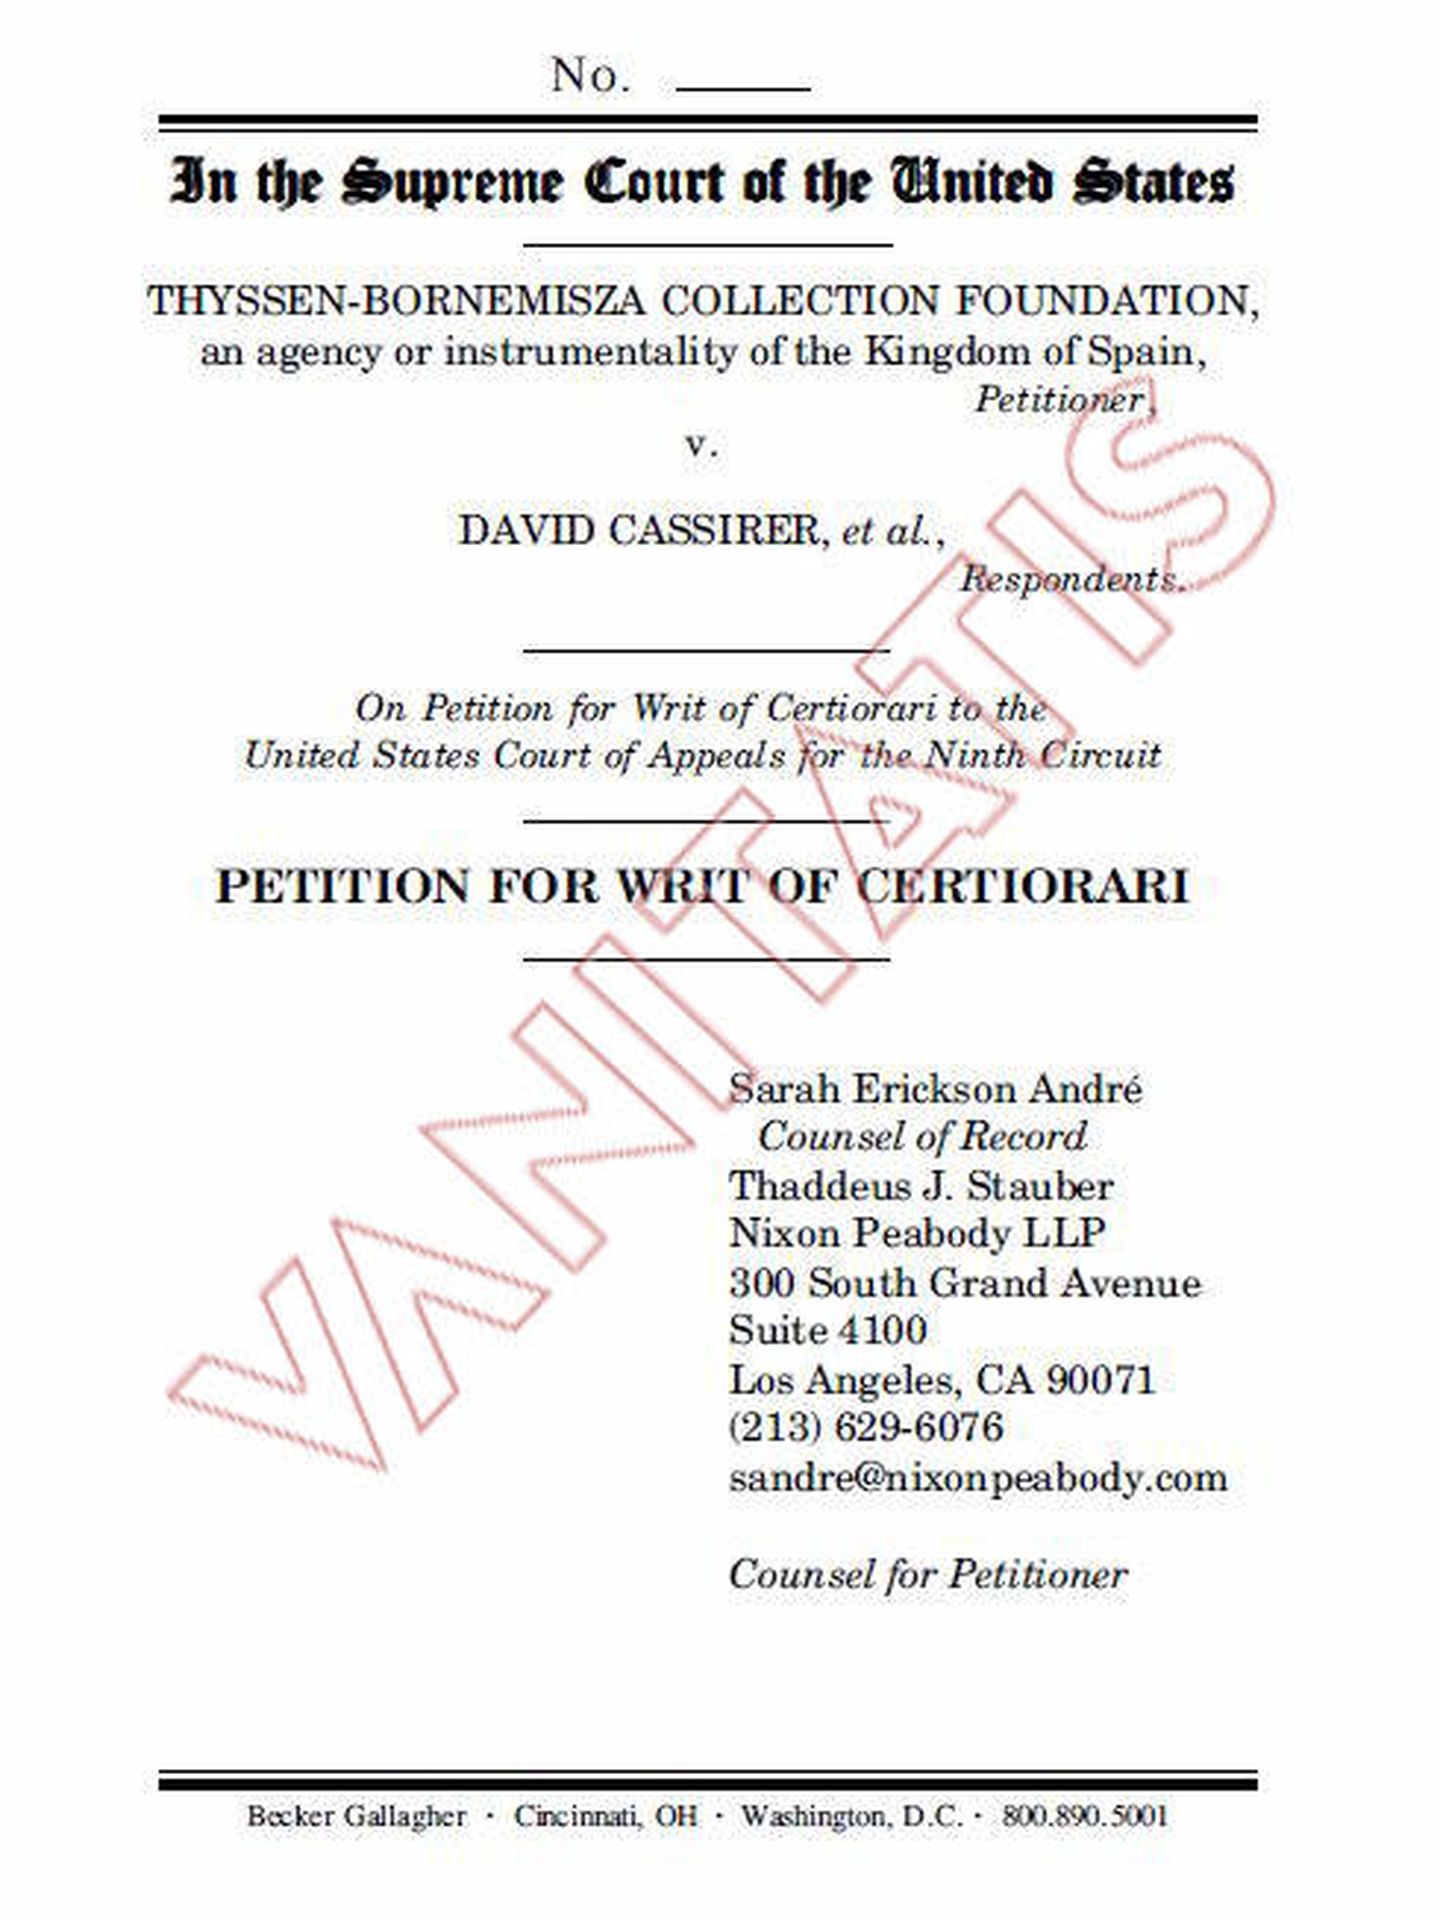 Extracto de la documentación relativa al litigio entre la Fundación Thyssen y la familia Cassirer. 